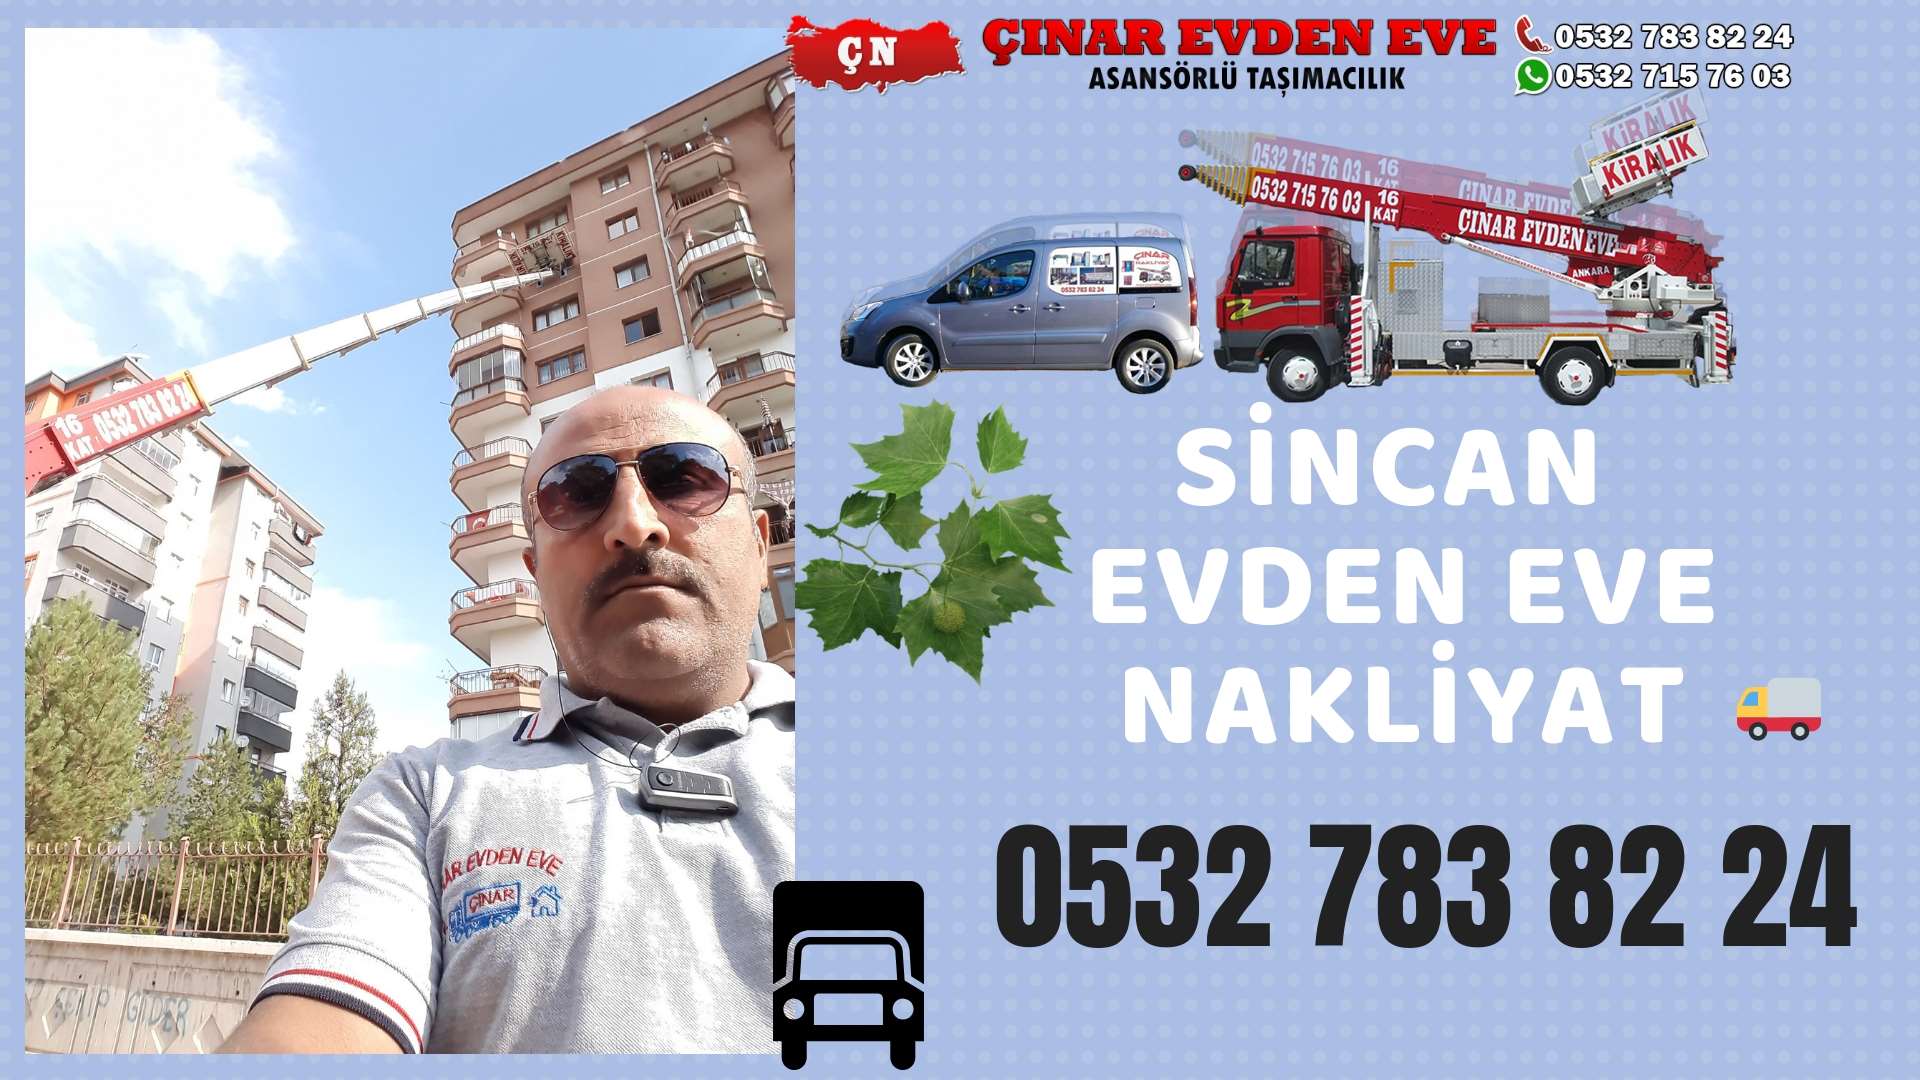 Ankara Yenimahalle Evden Eve Nakliyat, Asansörlü Taşımacılık, Ofis / İş Yeri Taşıma 0532 715 76 03